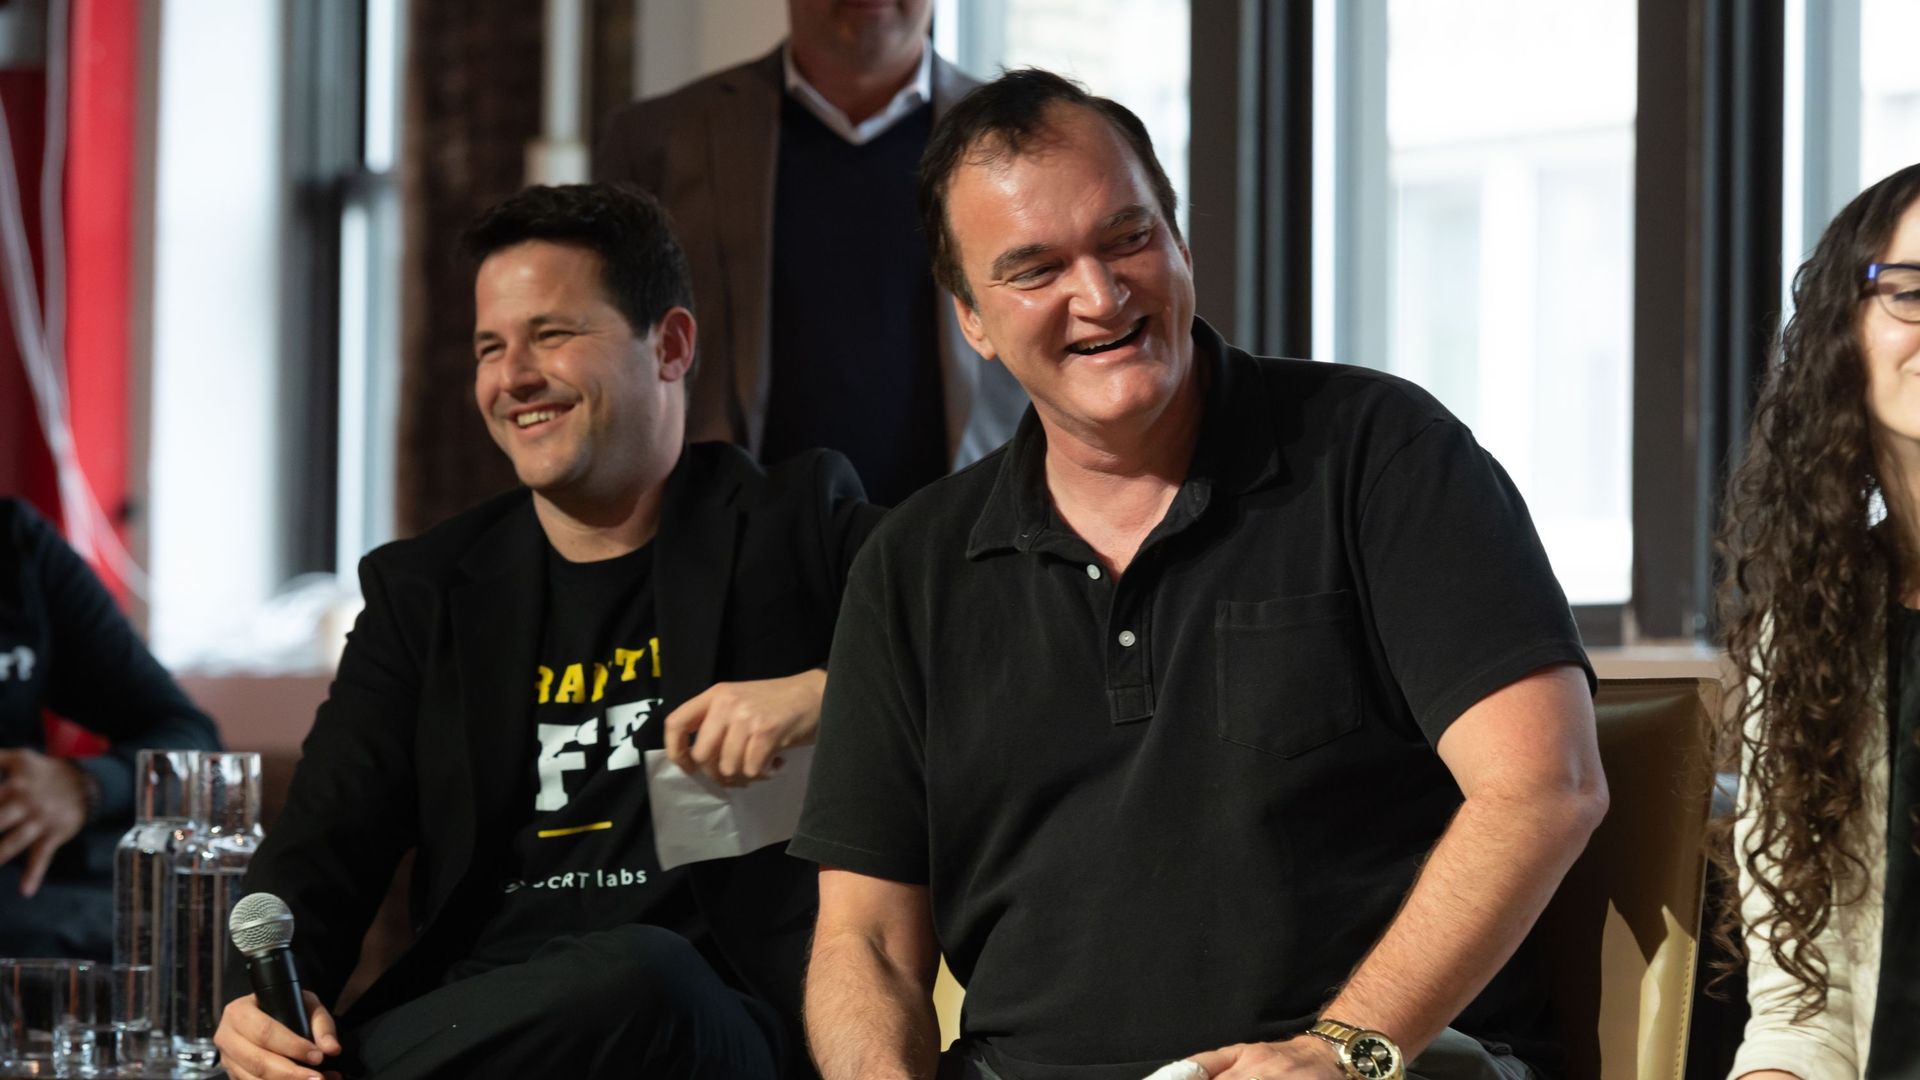 Guy Zyskind, PDG de SCRT Labs, et Quentin Tarantino prennent la parole lors d’une discussion sur les NFT de "Pulp Fiction" au cours du NFT.NYC, le 2 novembre 2021 à New York.